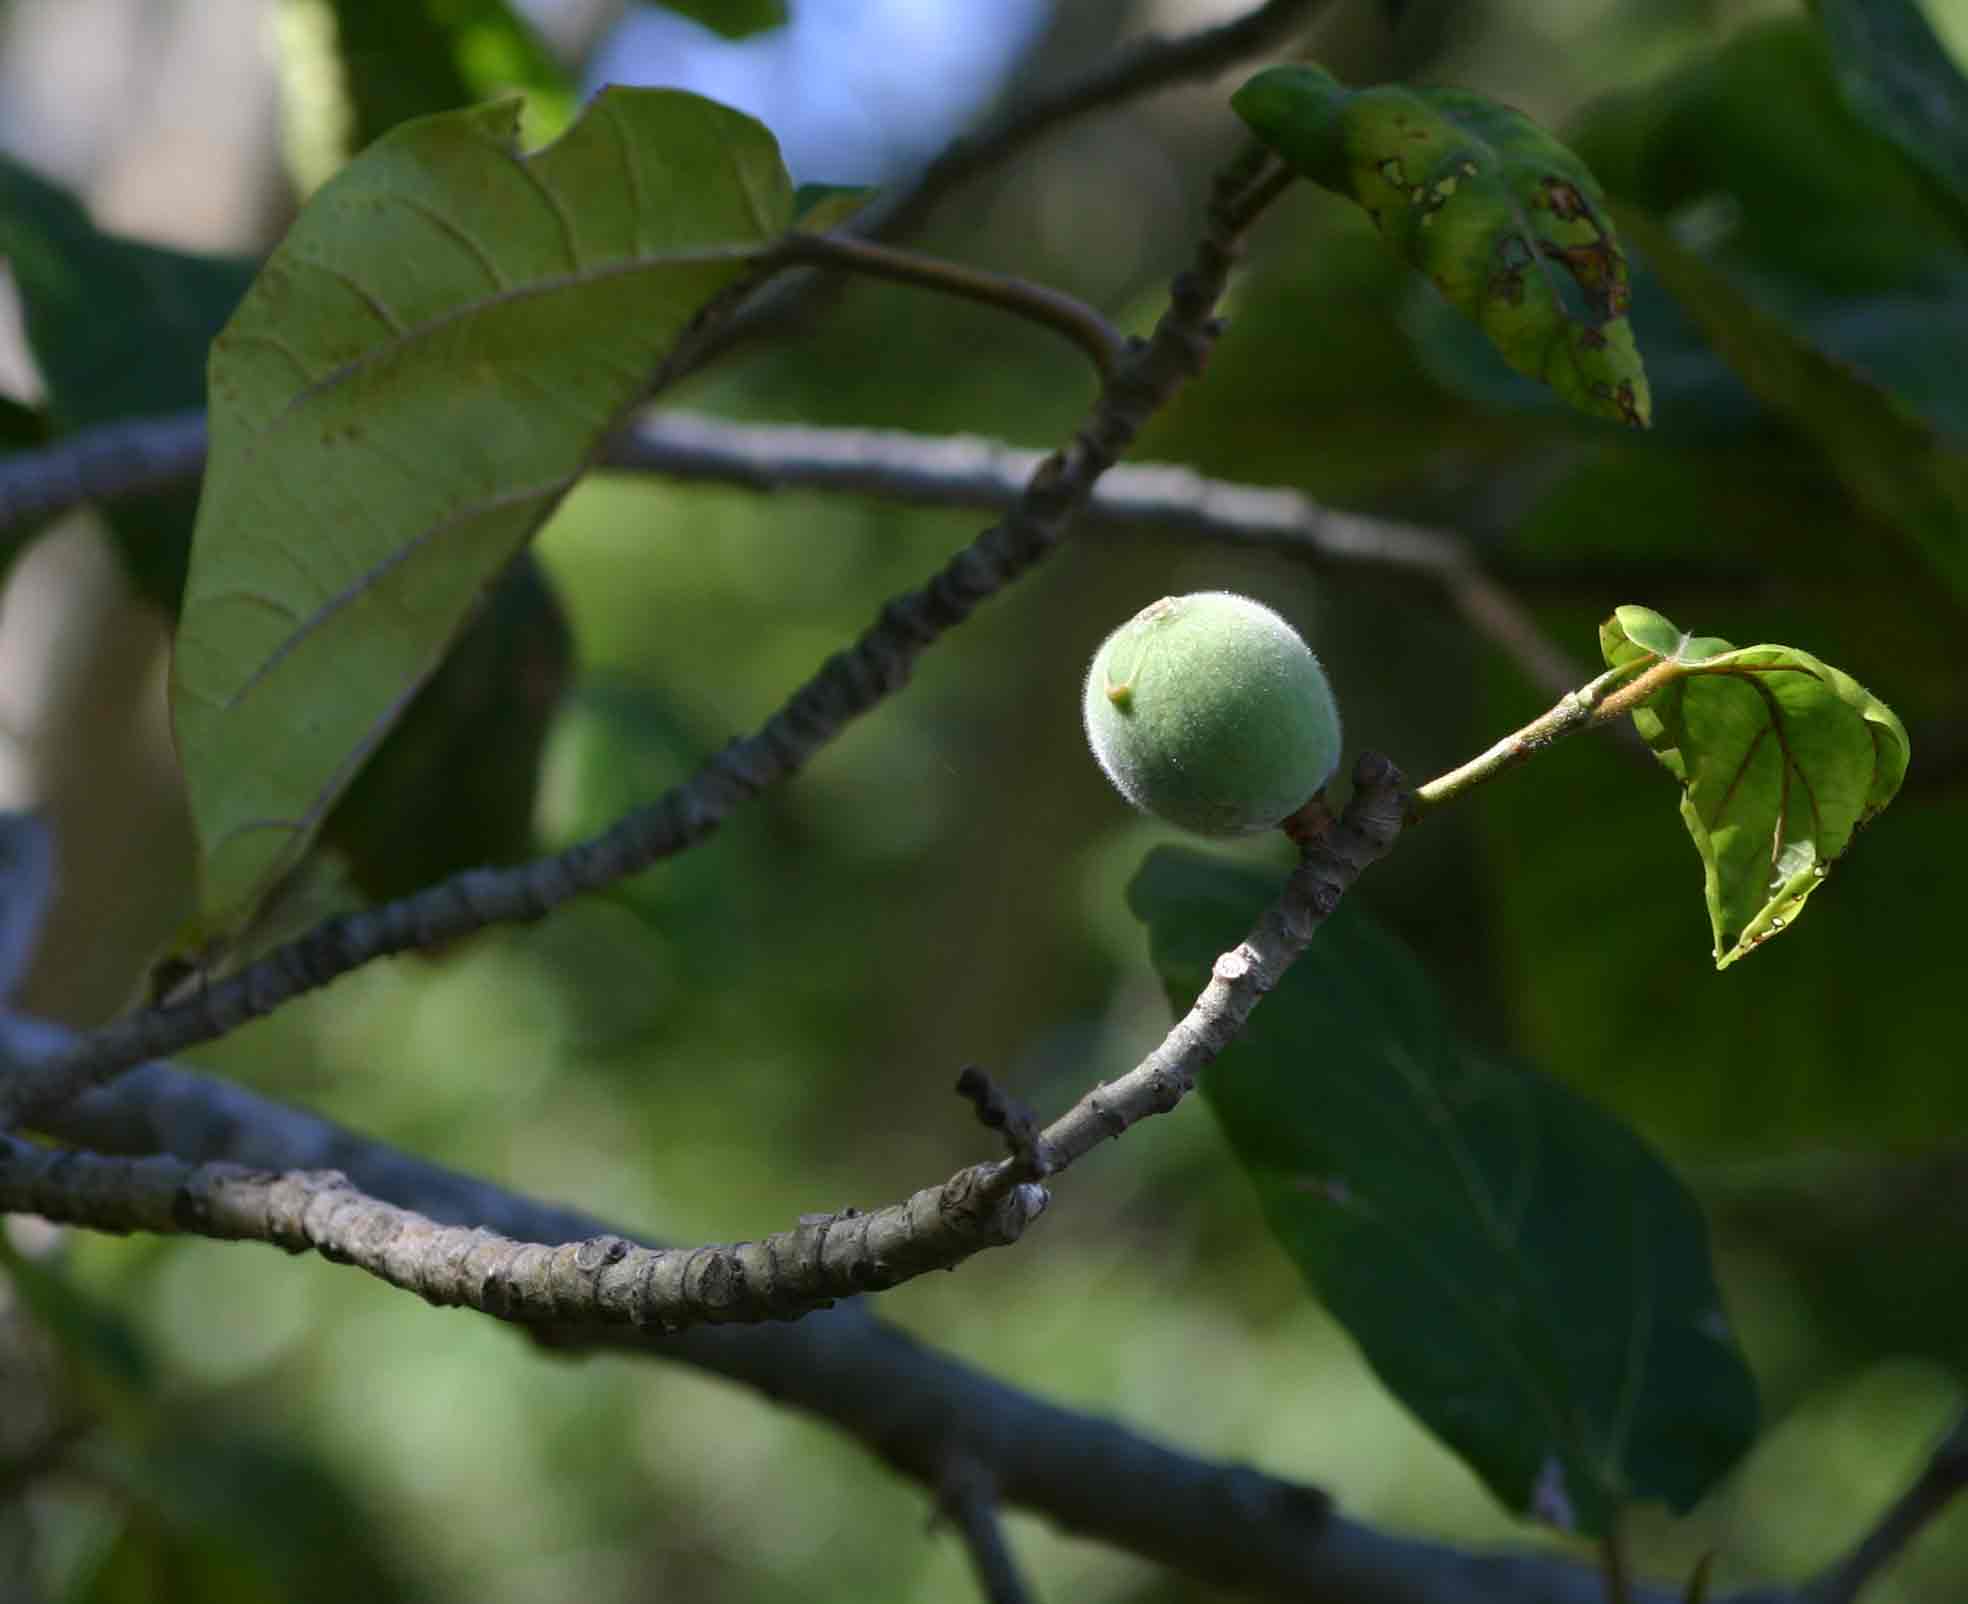 Ficus vallis-choudae